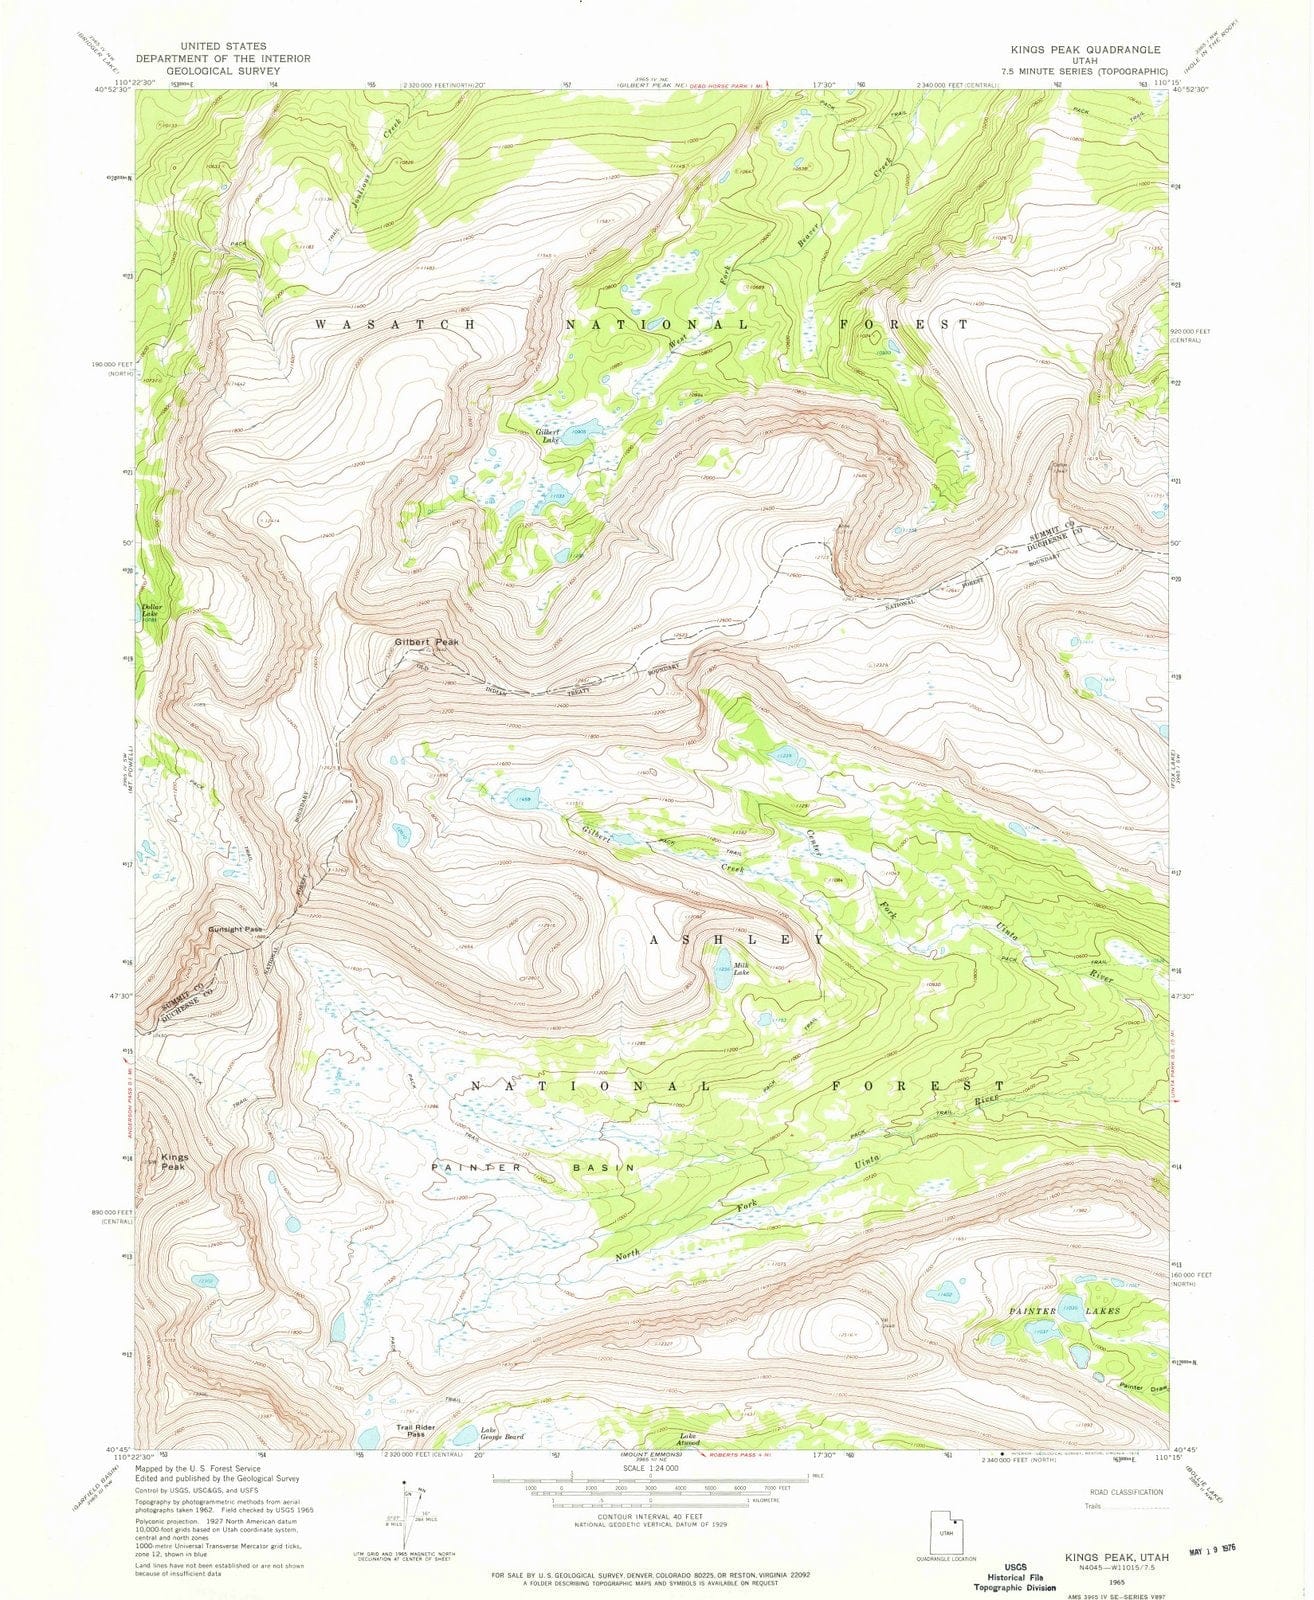 1965 Kings Peak, UT - Utah - USGS Topographic Map